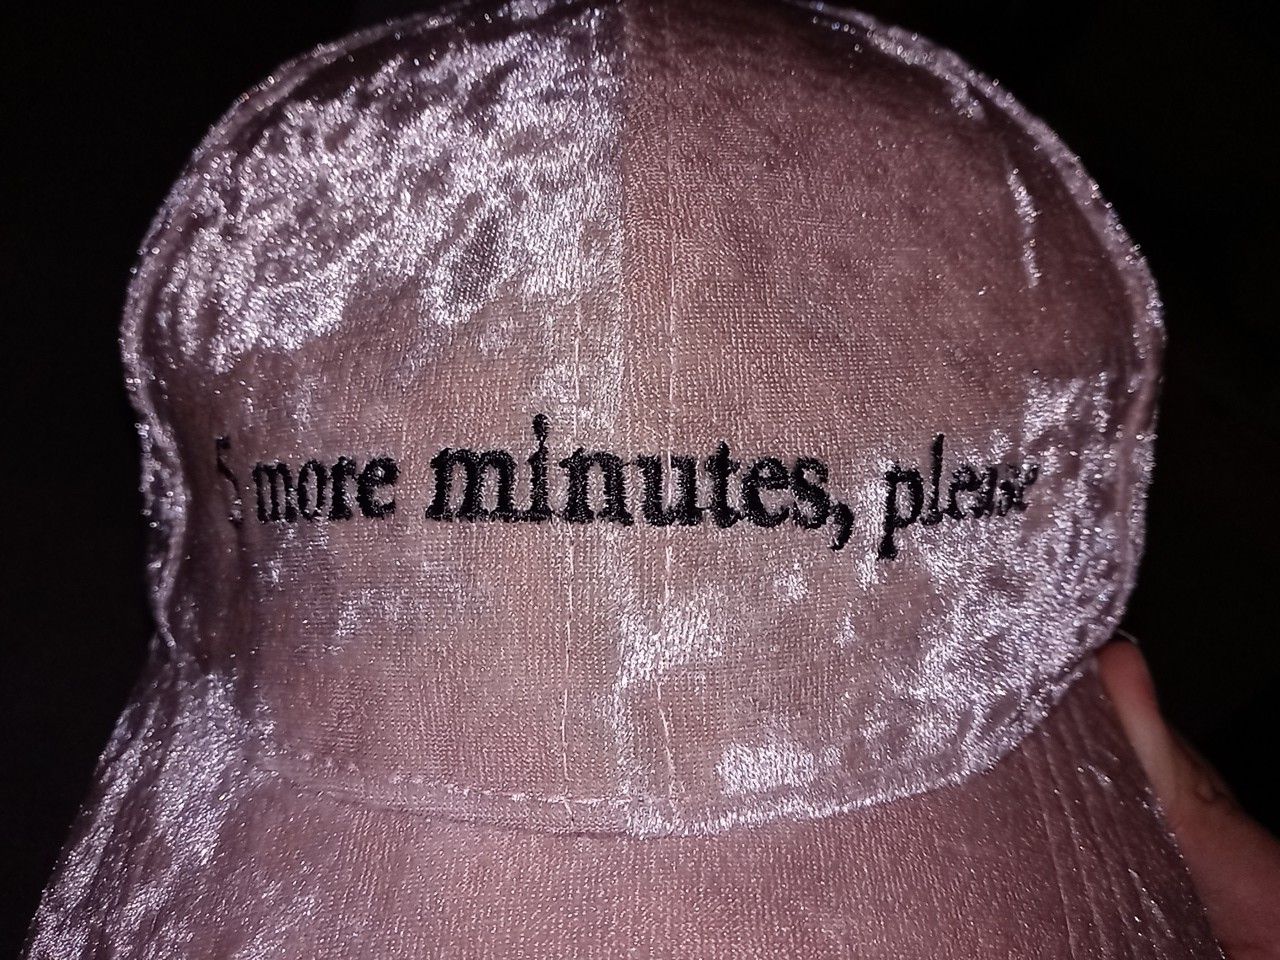 5 more minutes please velvet hat 25 cents